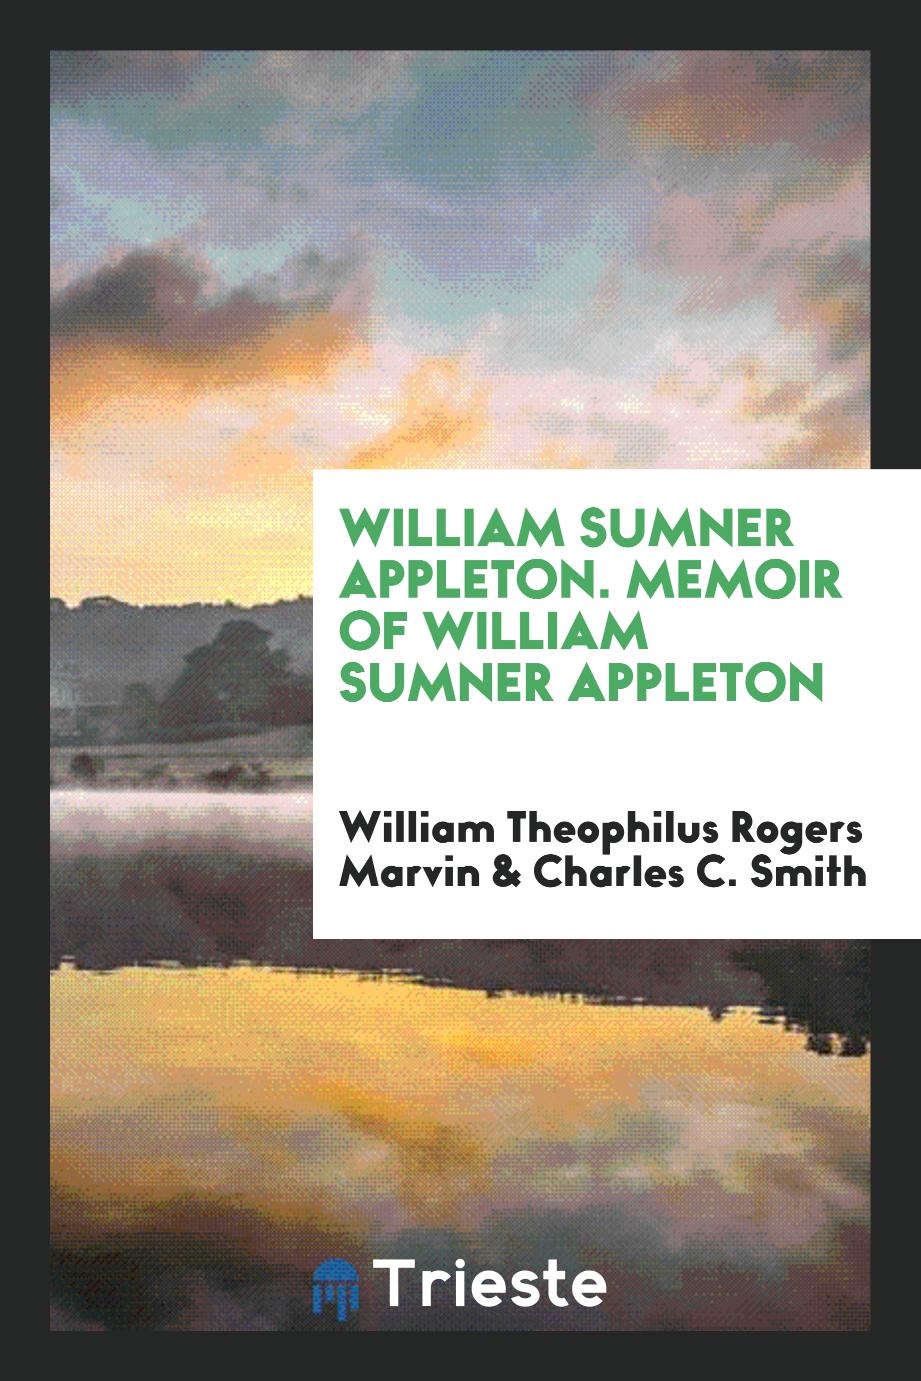 William Sumner Appleton. Memoir of William Sumner Appleton